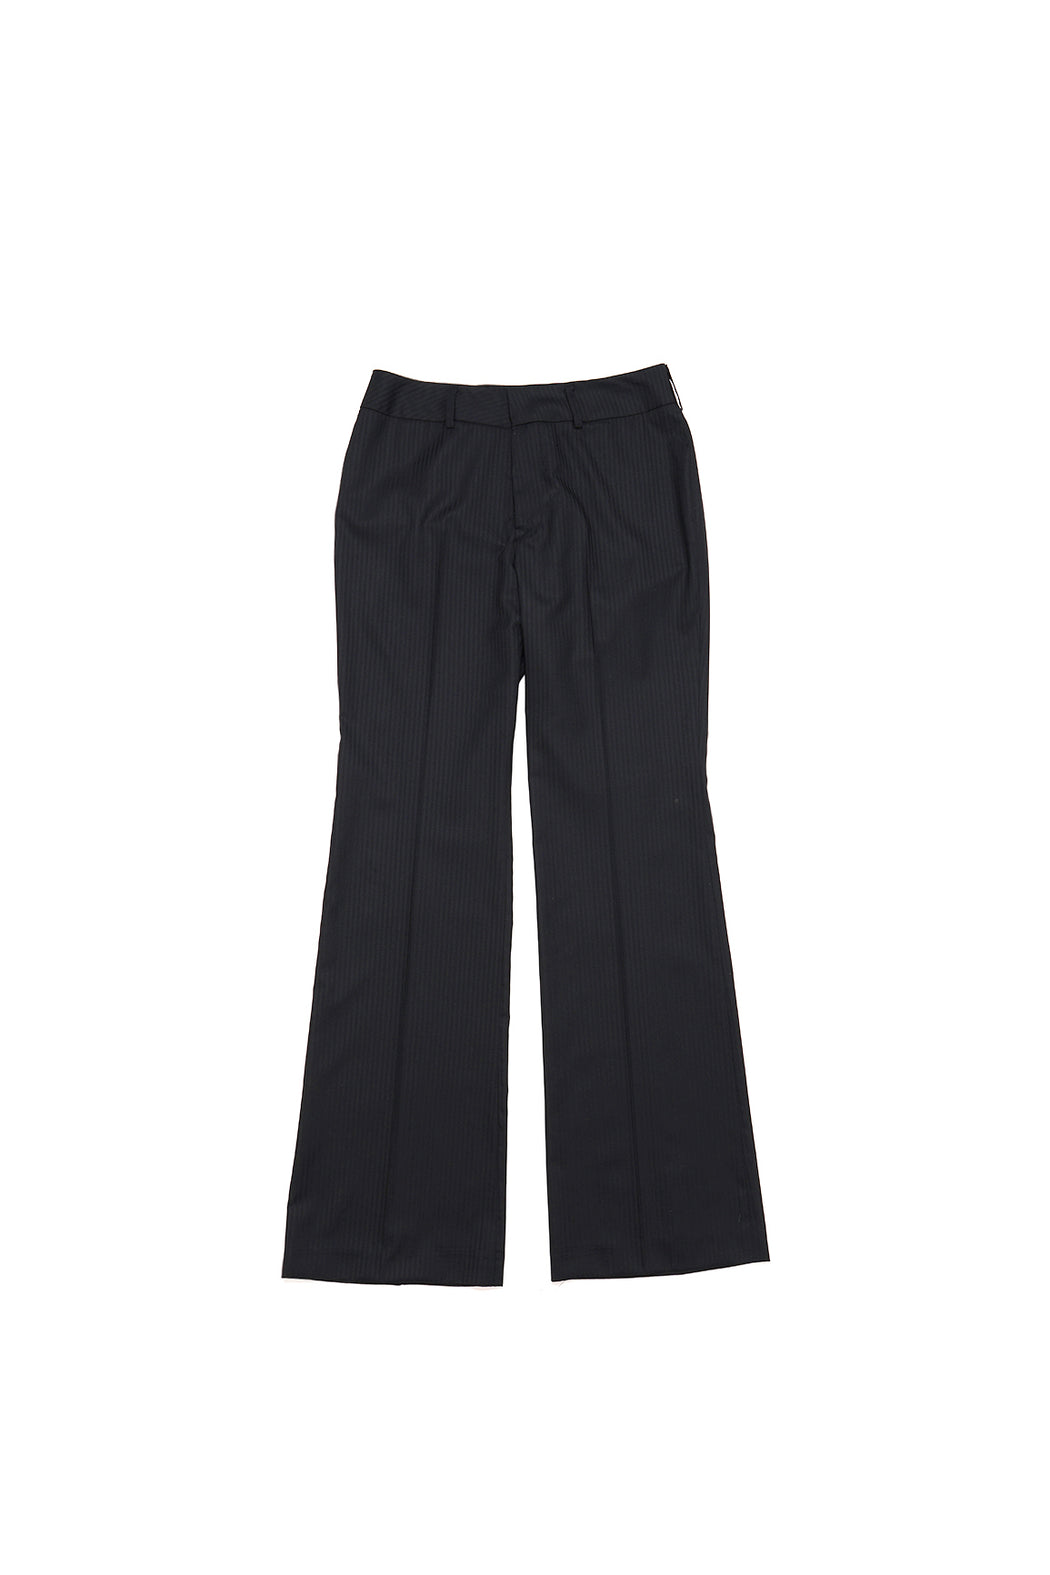 val flare pants – The black market boutique